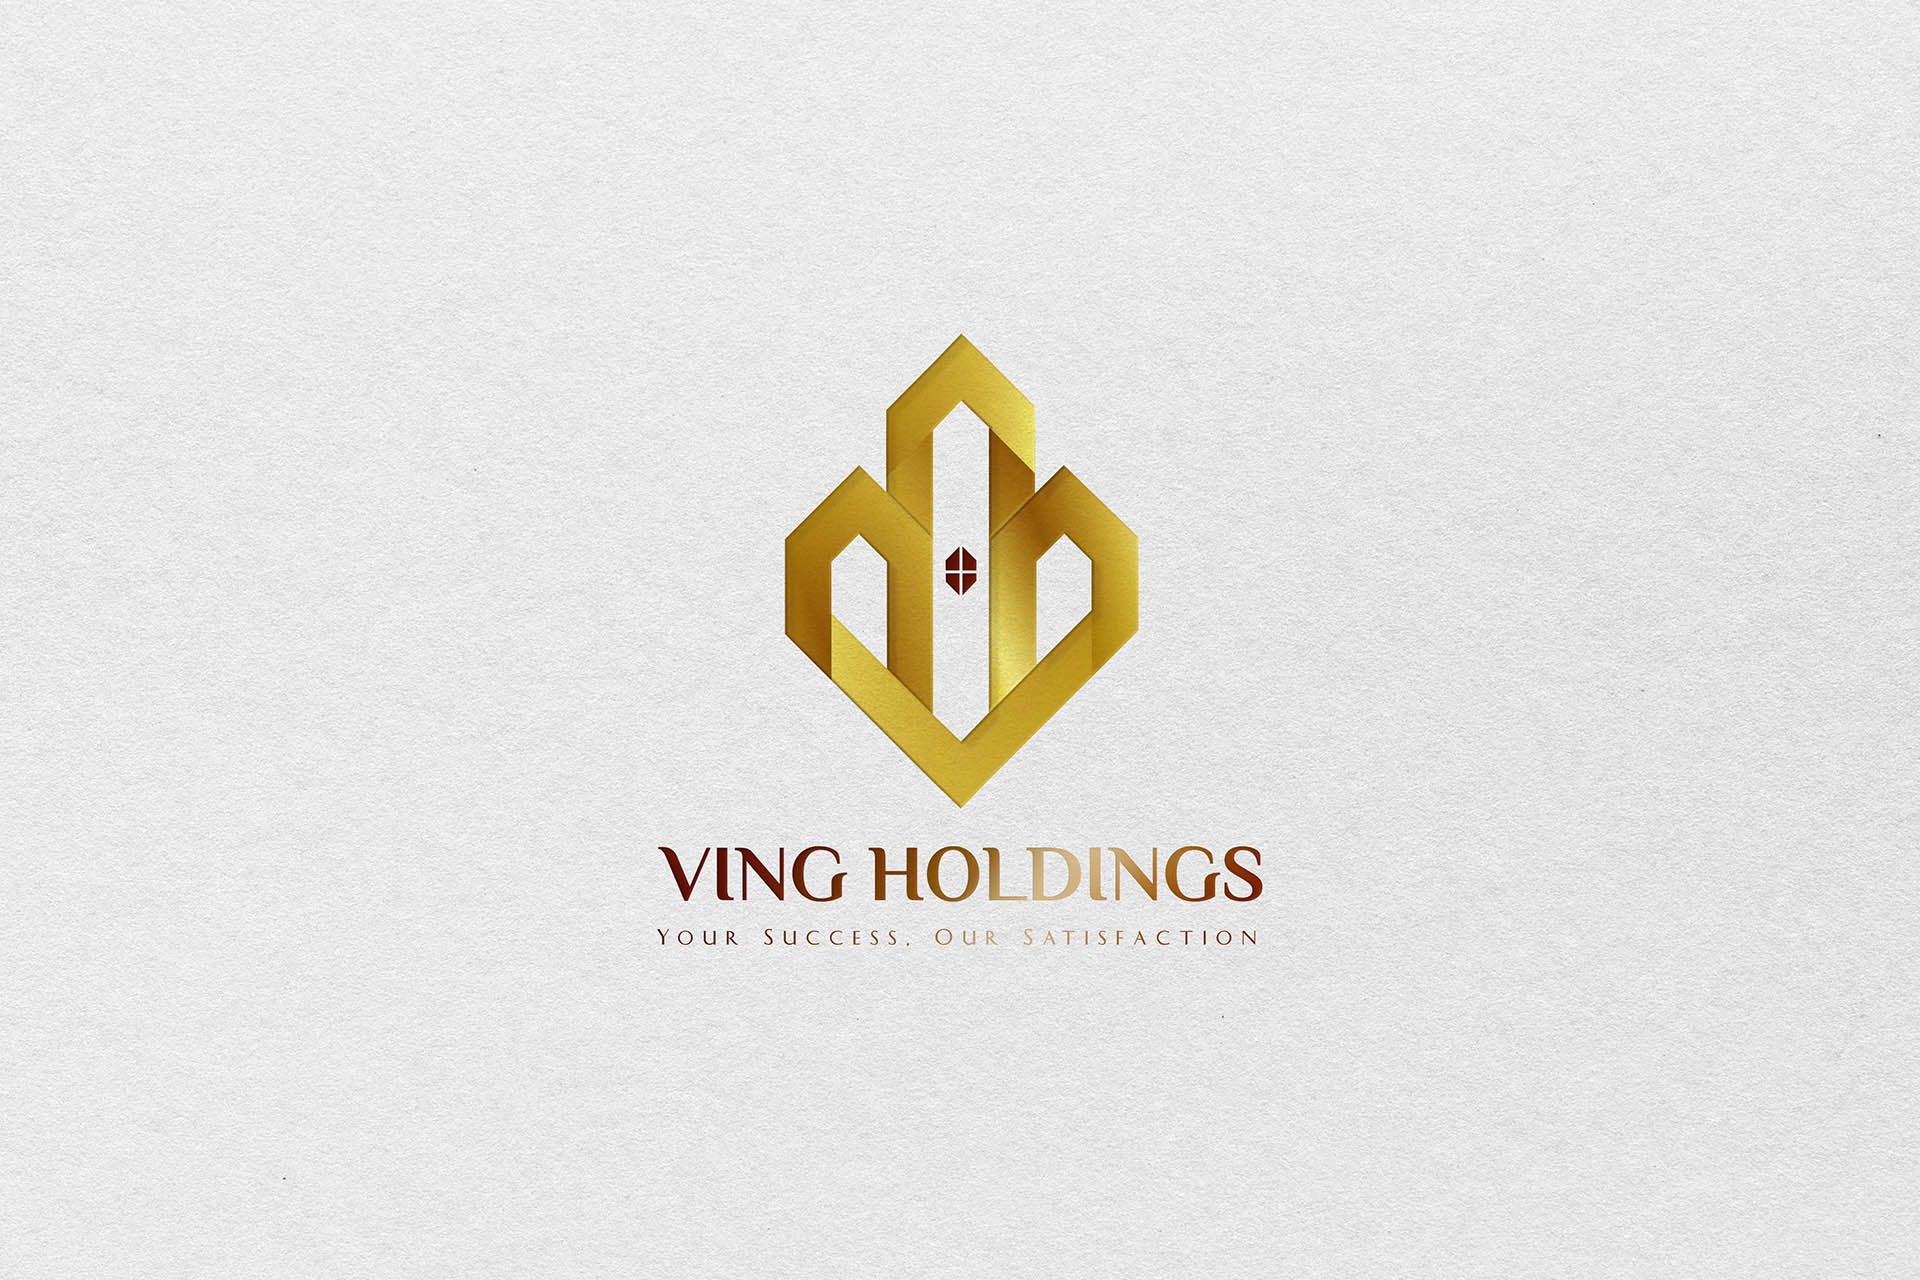 Bản chính thiết kế Logo bất động sản Vingholdings. Sử dụng cho các ảnh đại diện của công ty như: ảnh khung chat, ảnh hiển thị email, ảnh trang cá nhân.